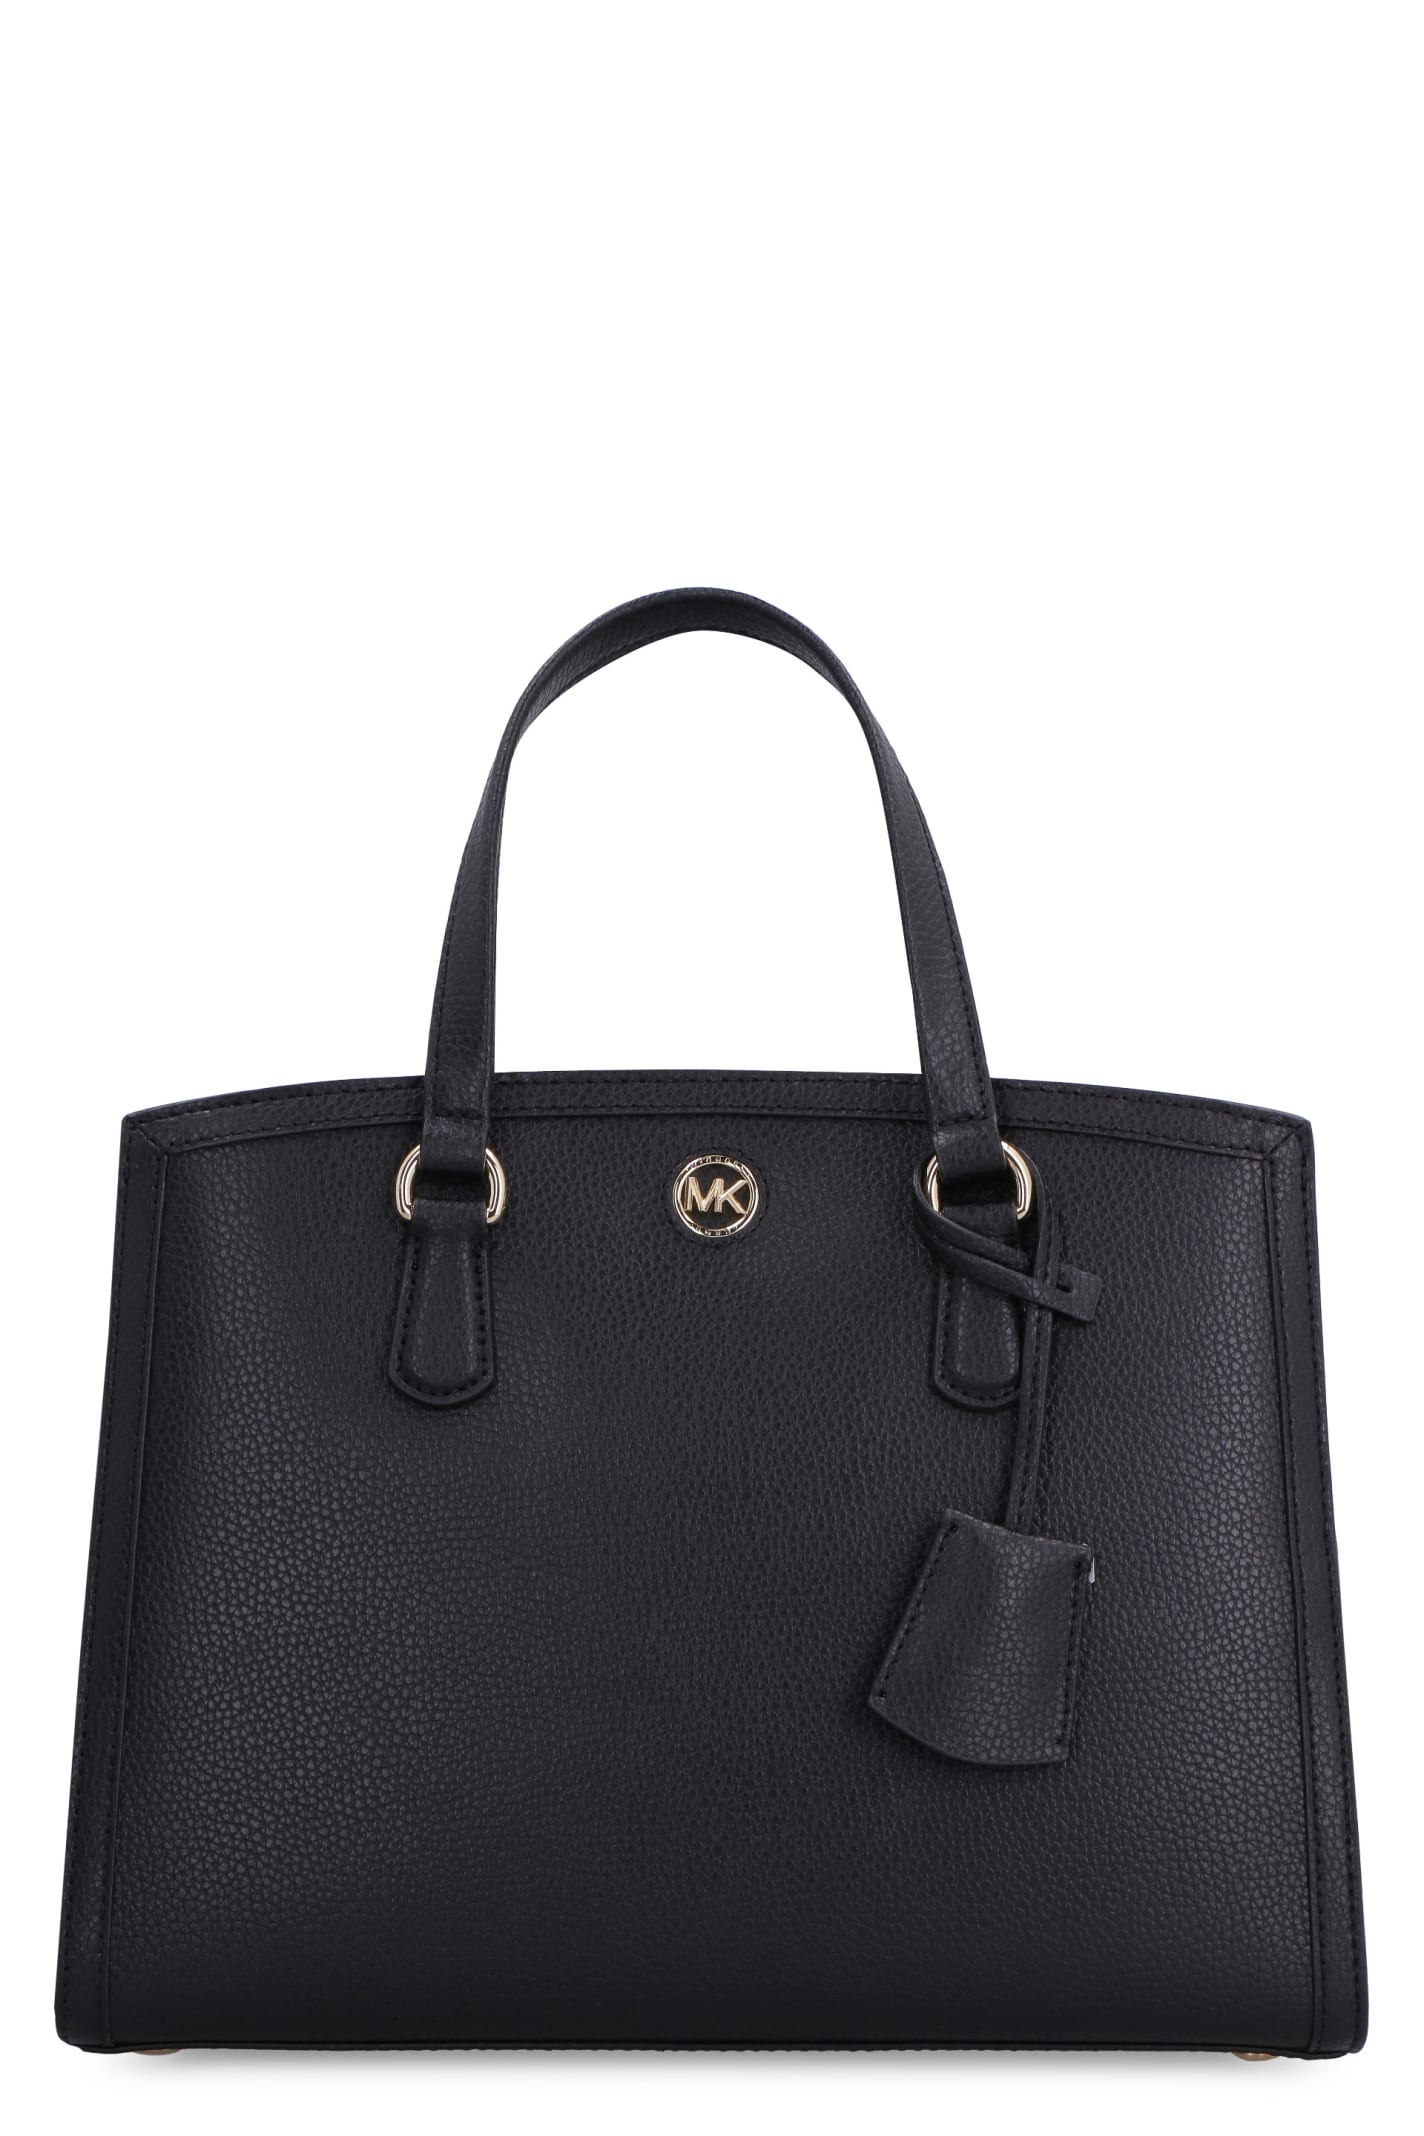 Michael Kors Chantal Leather Handbag